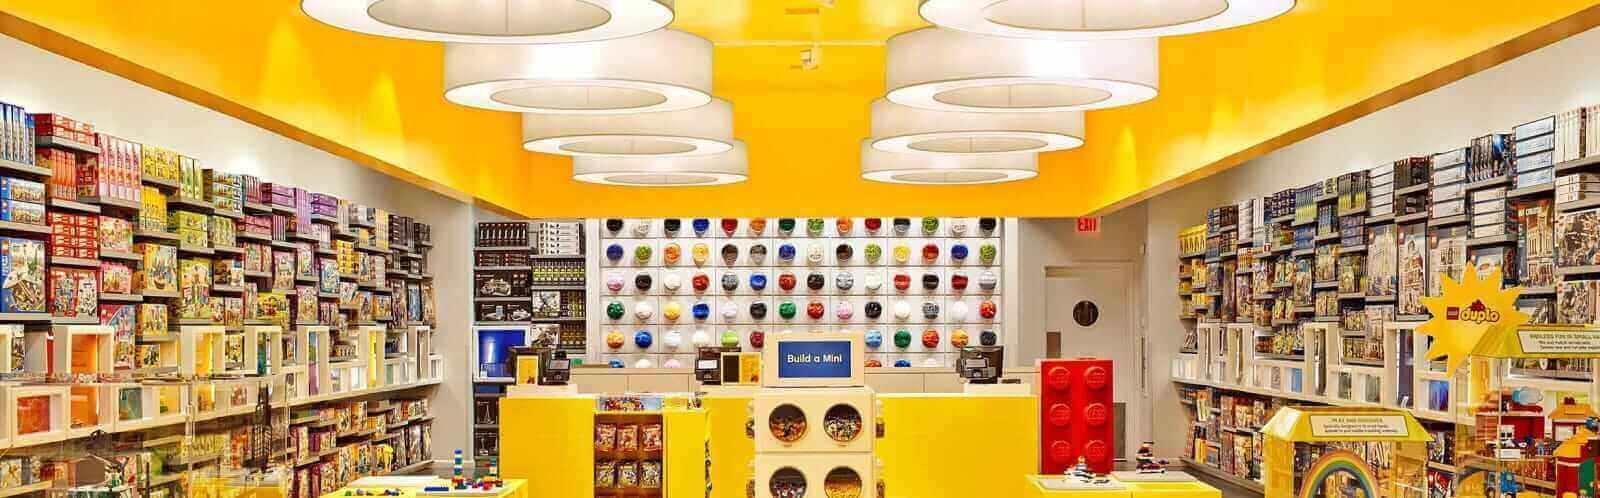 LEGO® Sale  Official LEGO® Shop US